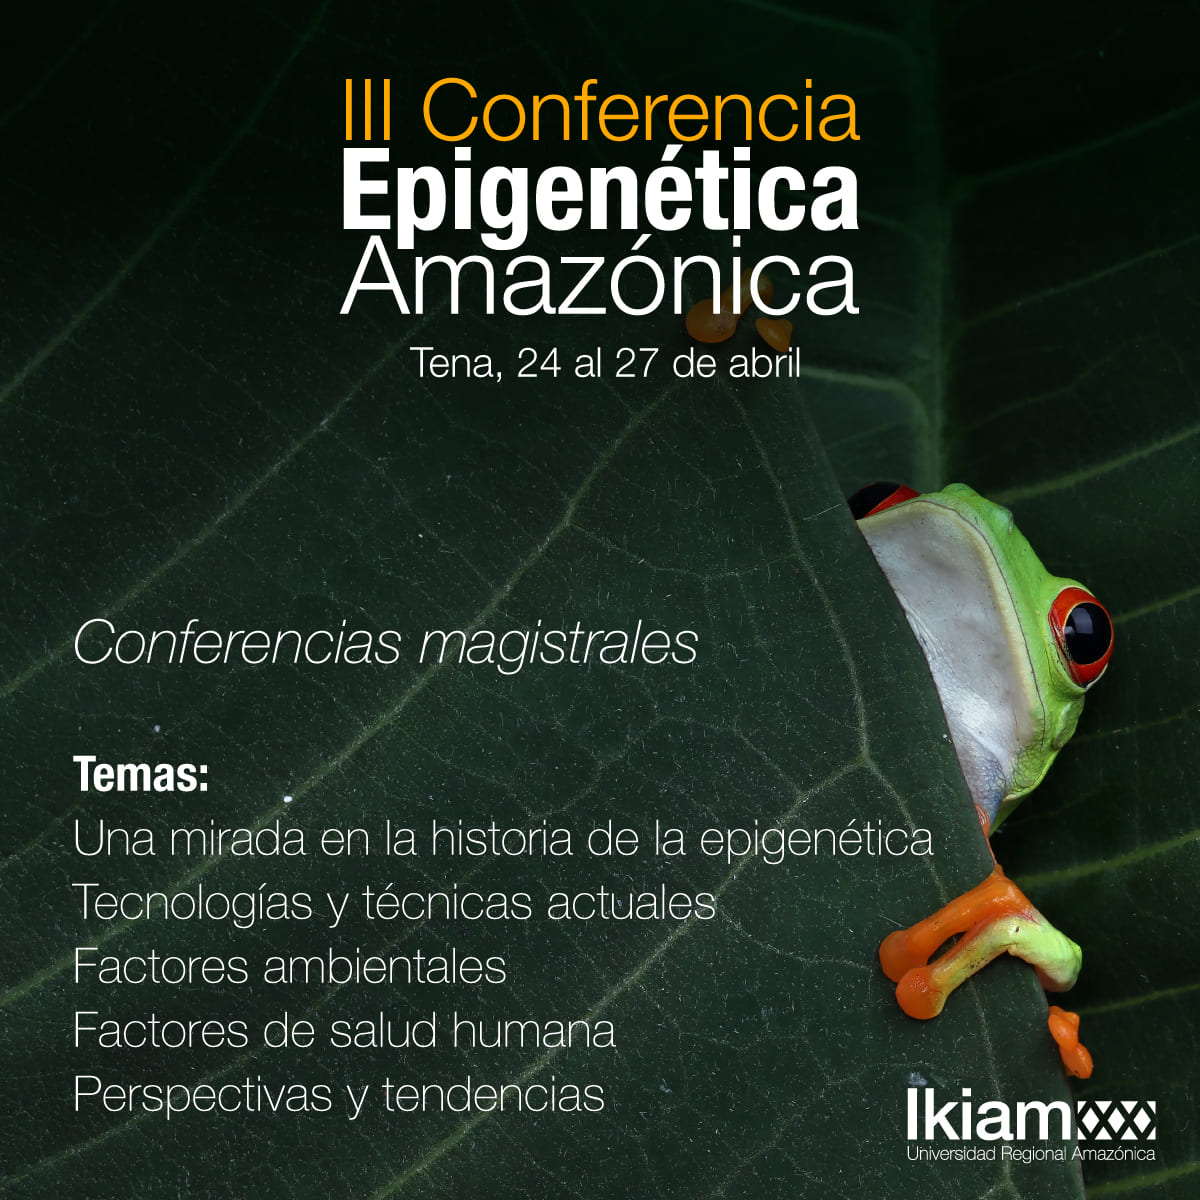 III-Conferencia-Epigenética-Amazónica-4